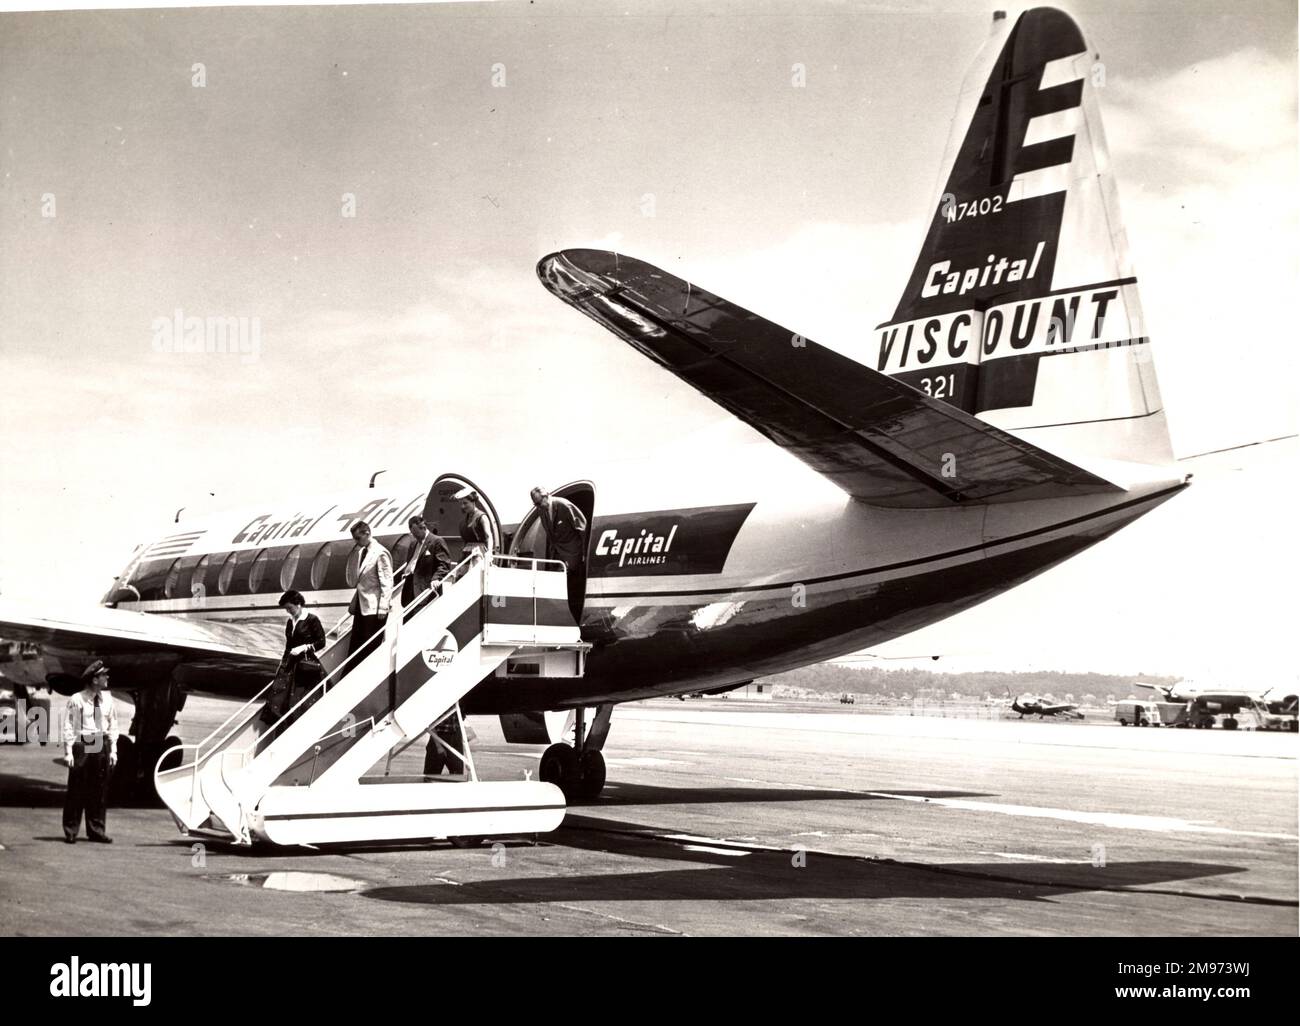 Passagiere, die einen Vickers Viscount 744, N7402 von Capital Airlines abfliegen. Stockfoto